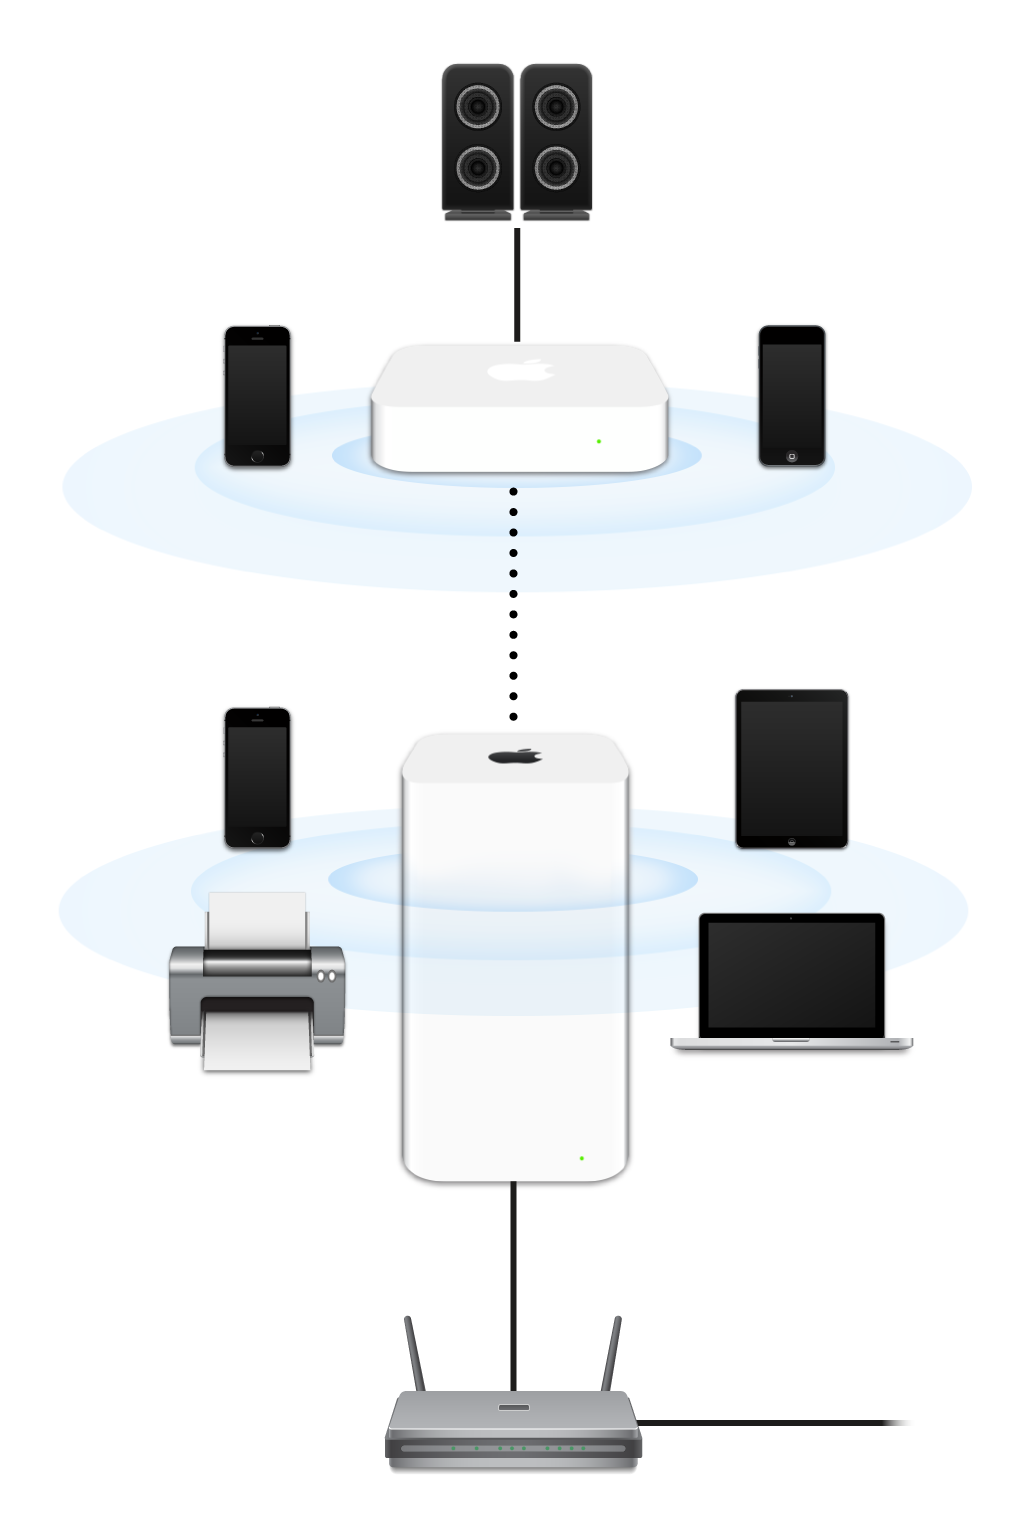 Laajennettu verkko, jossa näkyvät modeemiin liitetyt AirPort Extreme ja AirPort Express, jotka lähettävät useisiin laitteisiin.